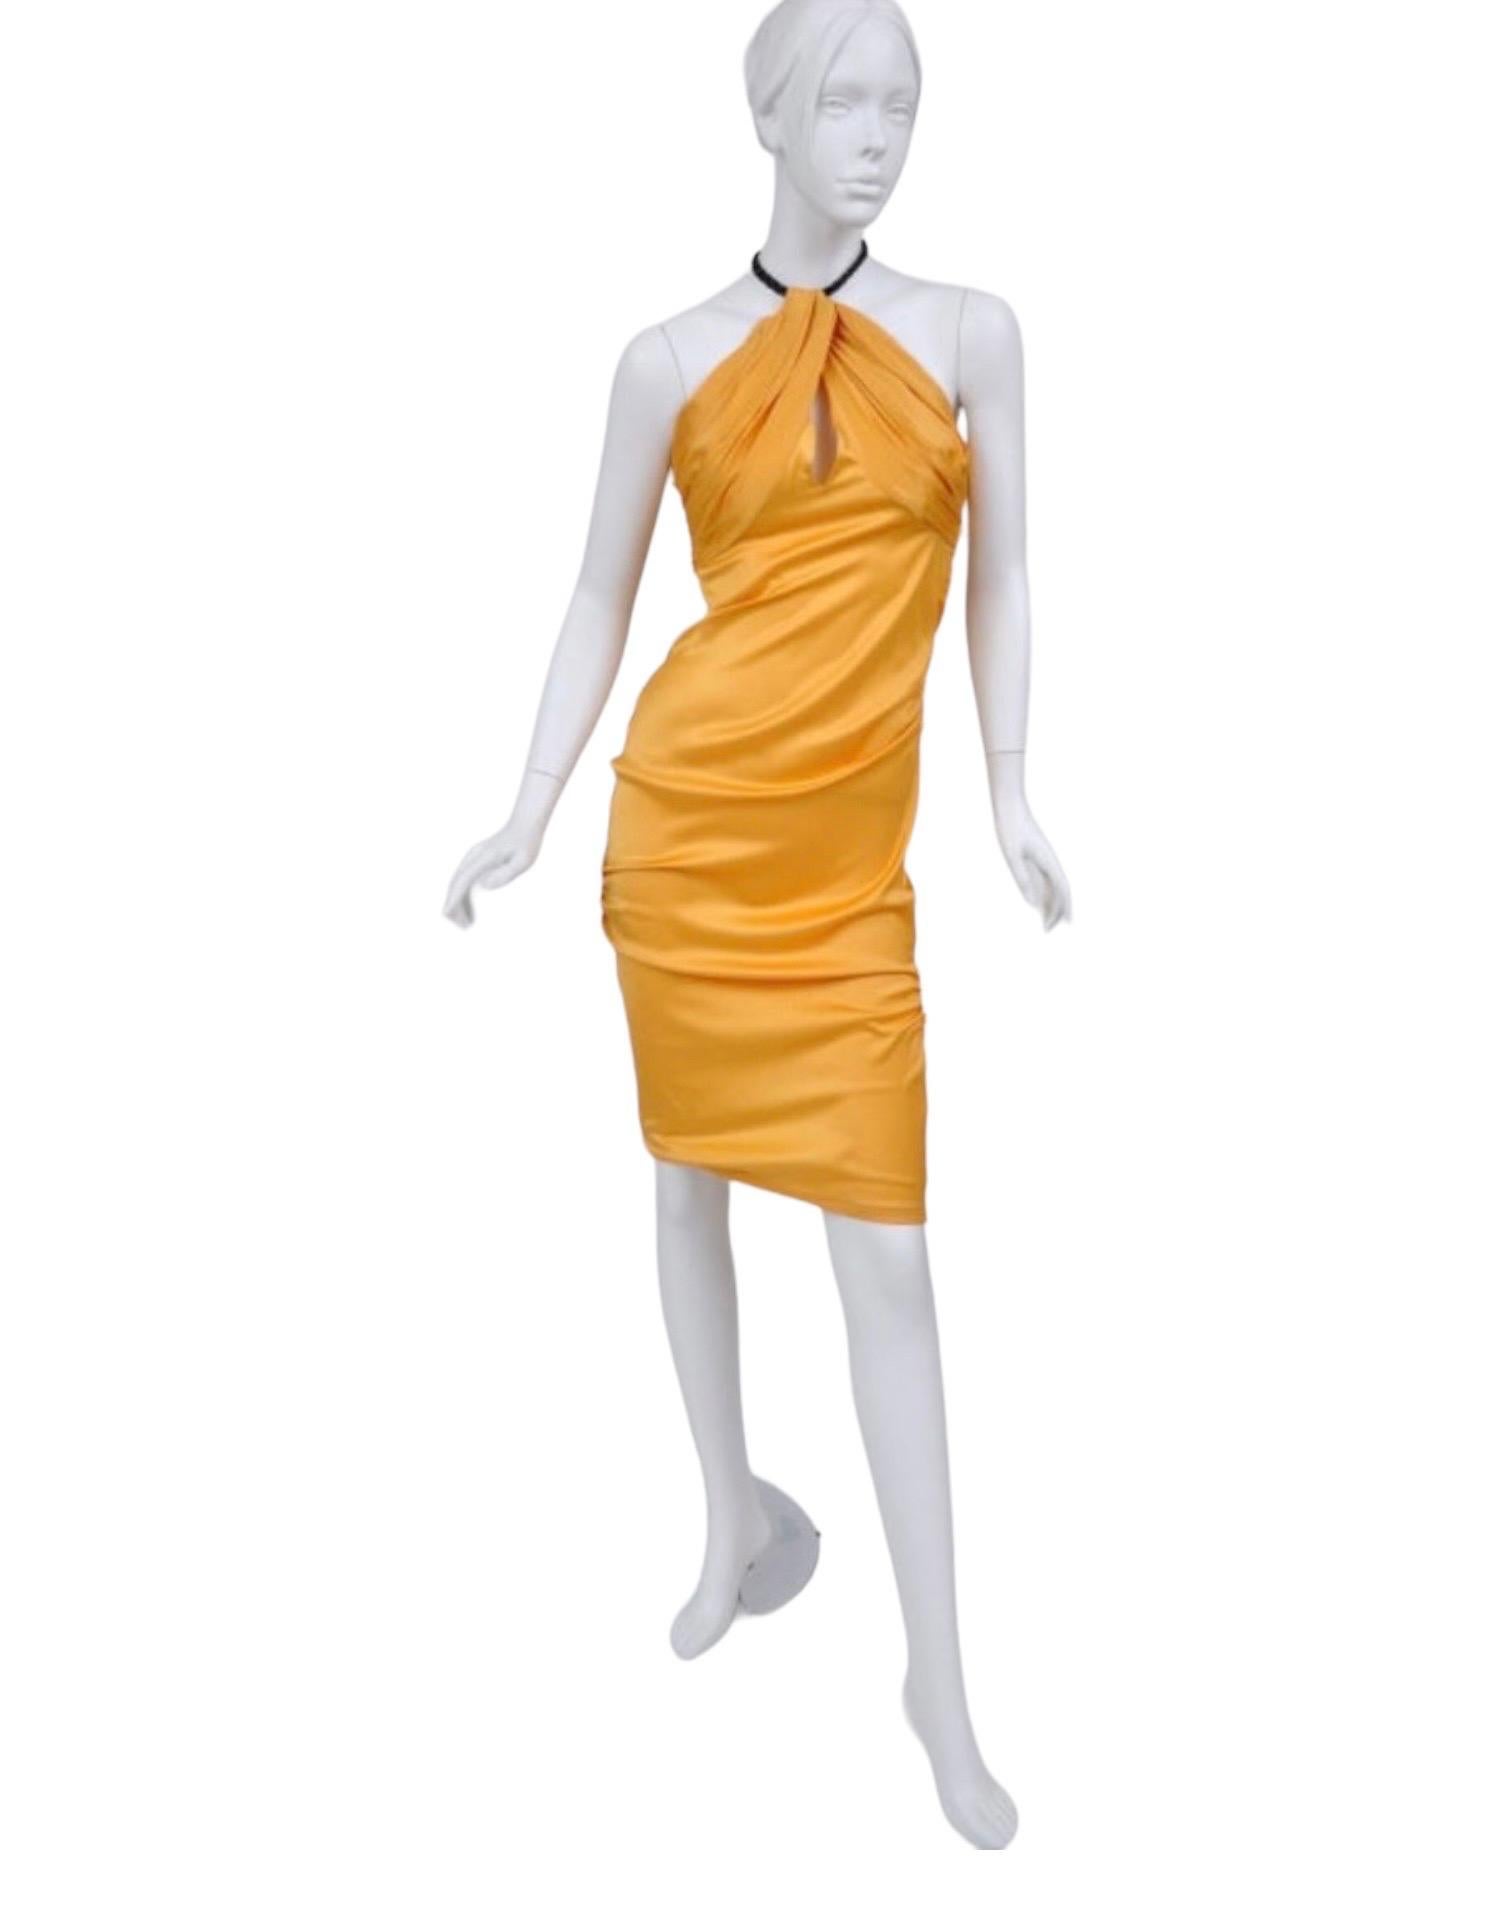 TOM FORD pour Gucci ROBE
Collection S S 2004
Etiquette de taille manquante, environ taille 40
Tom a créé une robe sensuellement ajustée avec des touches de couture chic. Des fronces douces donnent à une forme classique une touche de texture